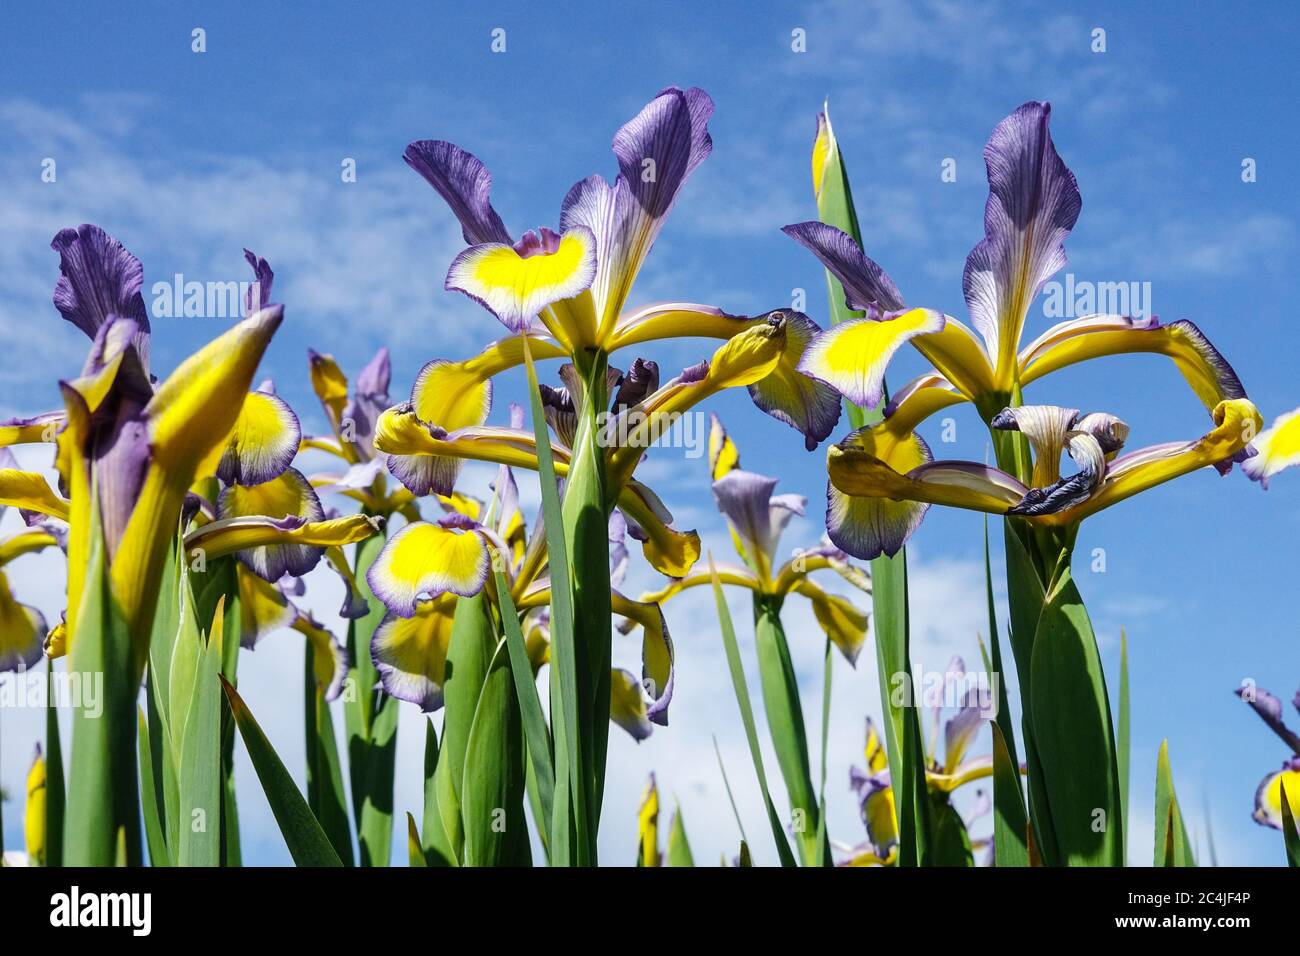 Blumen Himmel erhebt sich gegen blauen Himmel Iris blau gelb Pflanzen Hintergrund, Sommer Blume Natur Himmel Stockfoto